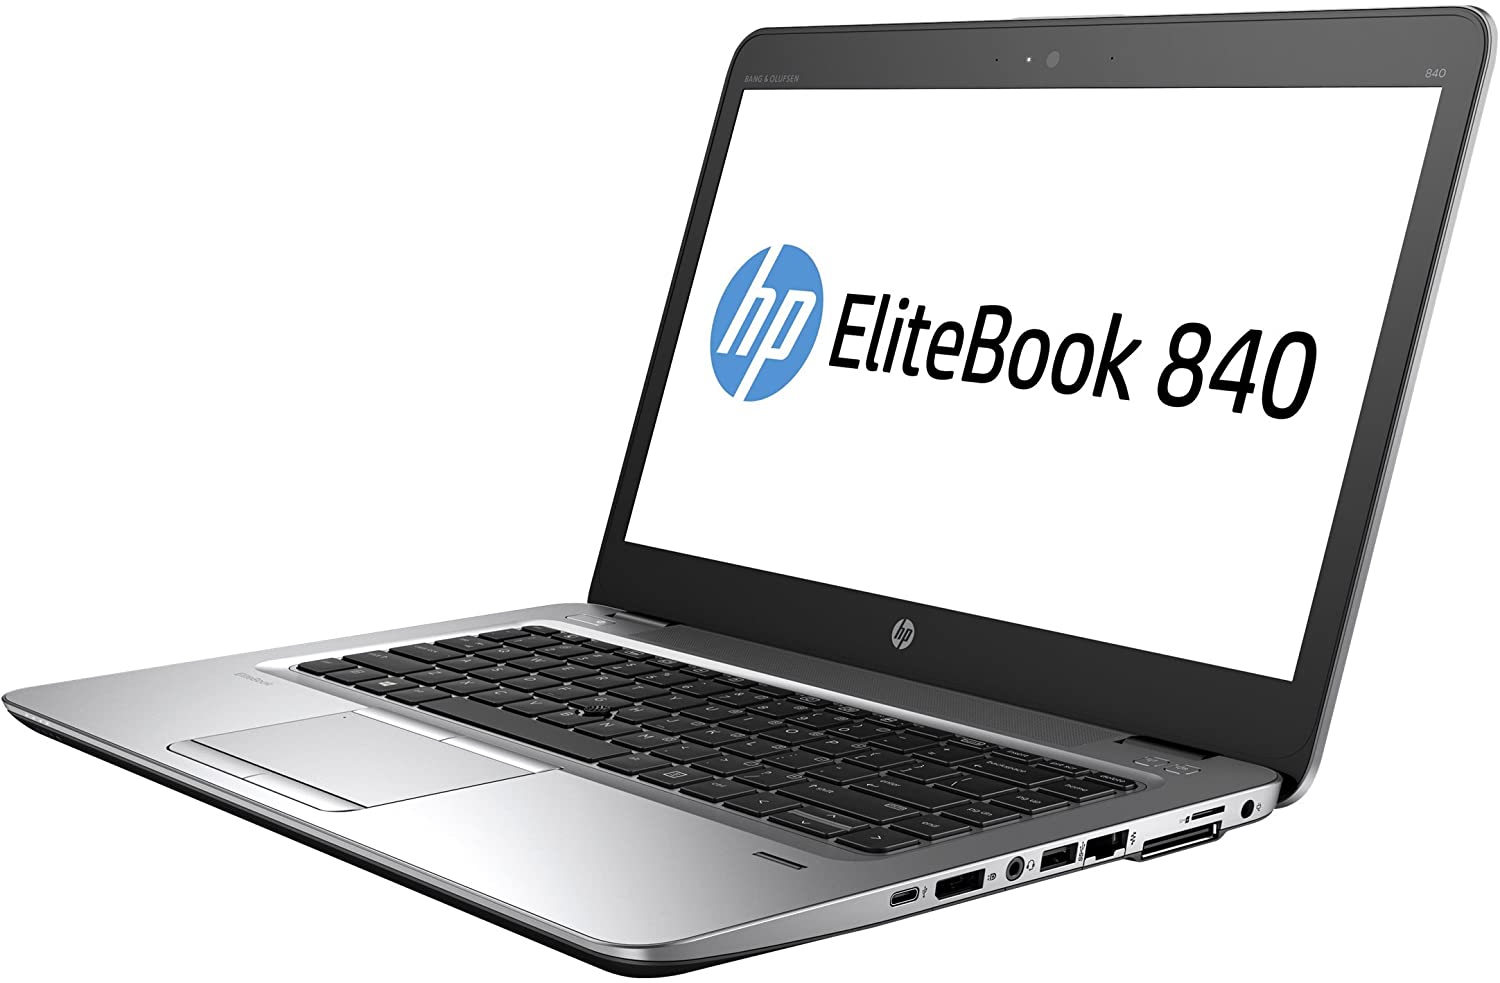 Portátil Ultrabook HP Elitebook 840 G3 GRADO B con teclado castellano (Intel Core i7 6500U 2.5Ghz/8GB/256SSD-M.2/14FHD/NO-DVD/W10P) Preinstalado